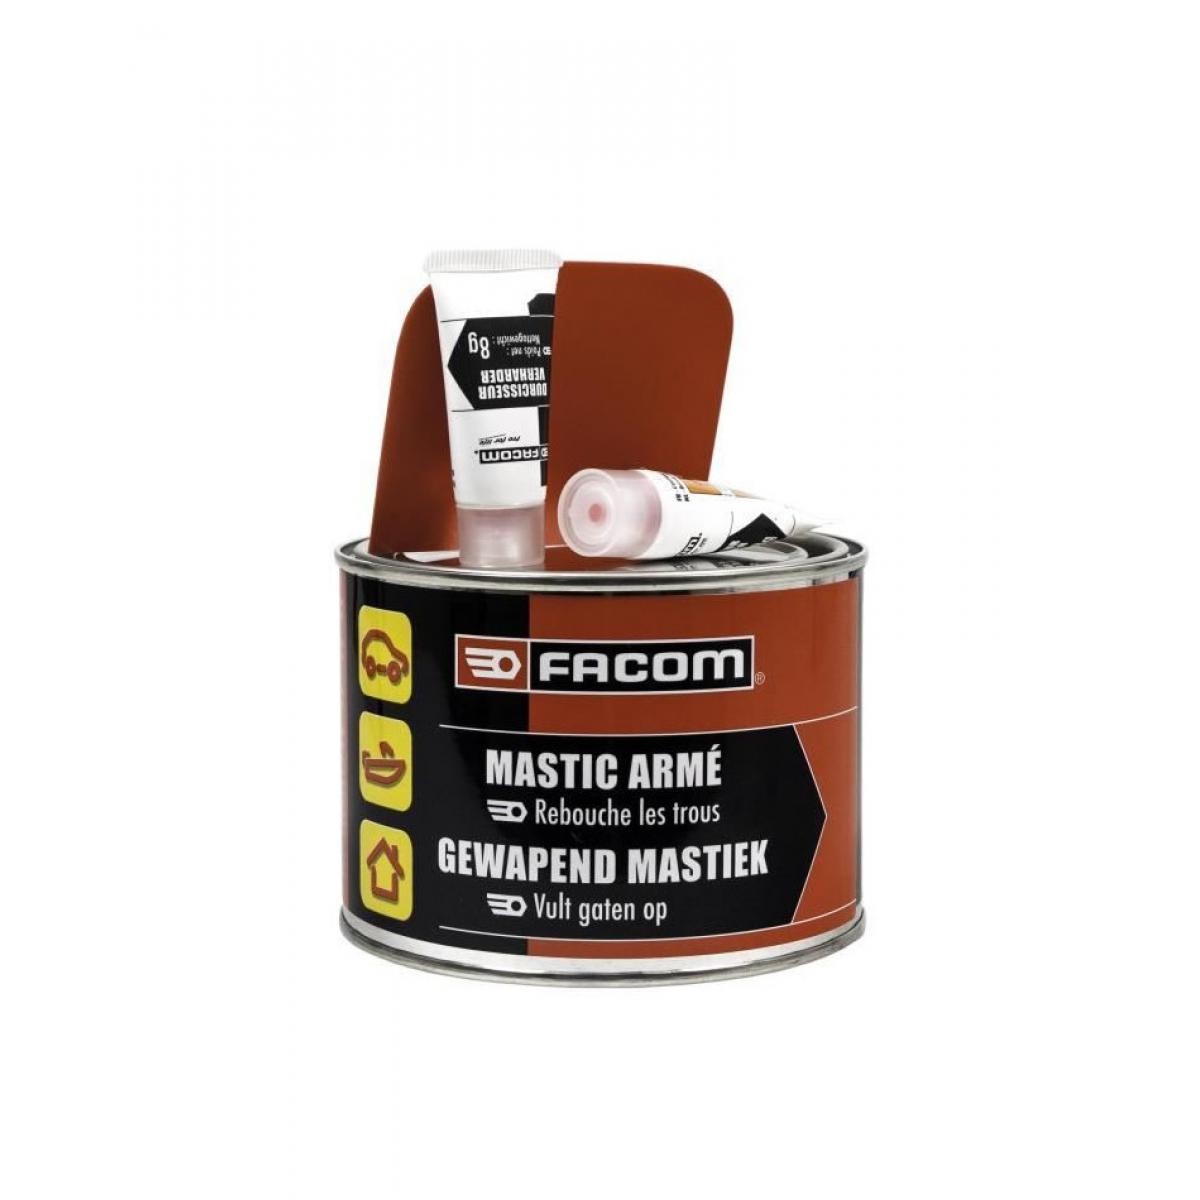 Facom - FACOM Mastic armé - Chagé en fibres de verre - 600 g - Mastic, silicone, joint